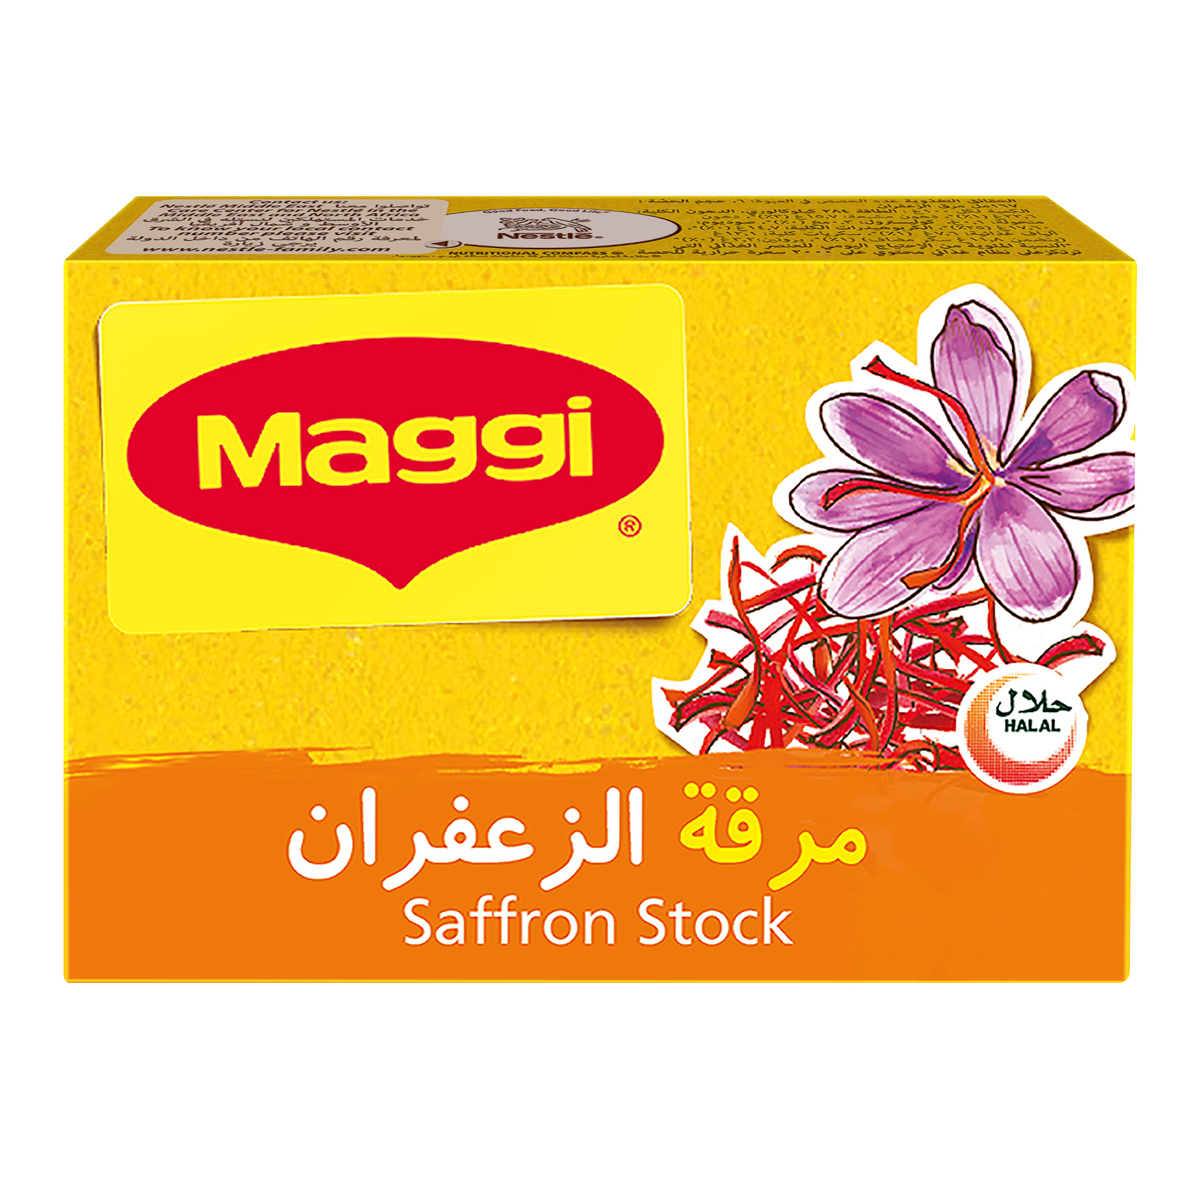 Maggi Saffron Stock Cube 24 x 20g